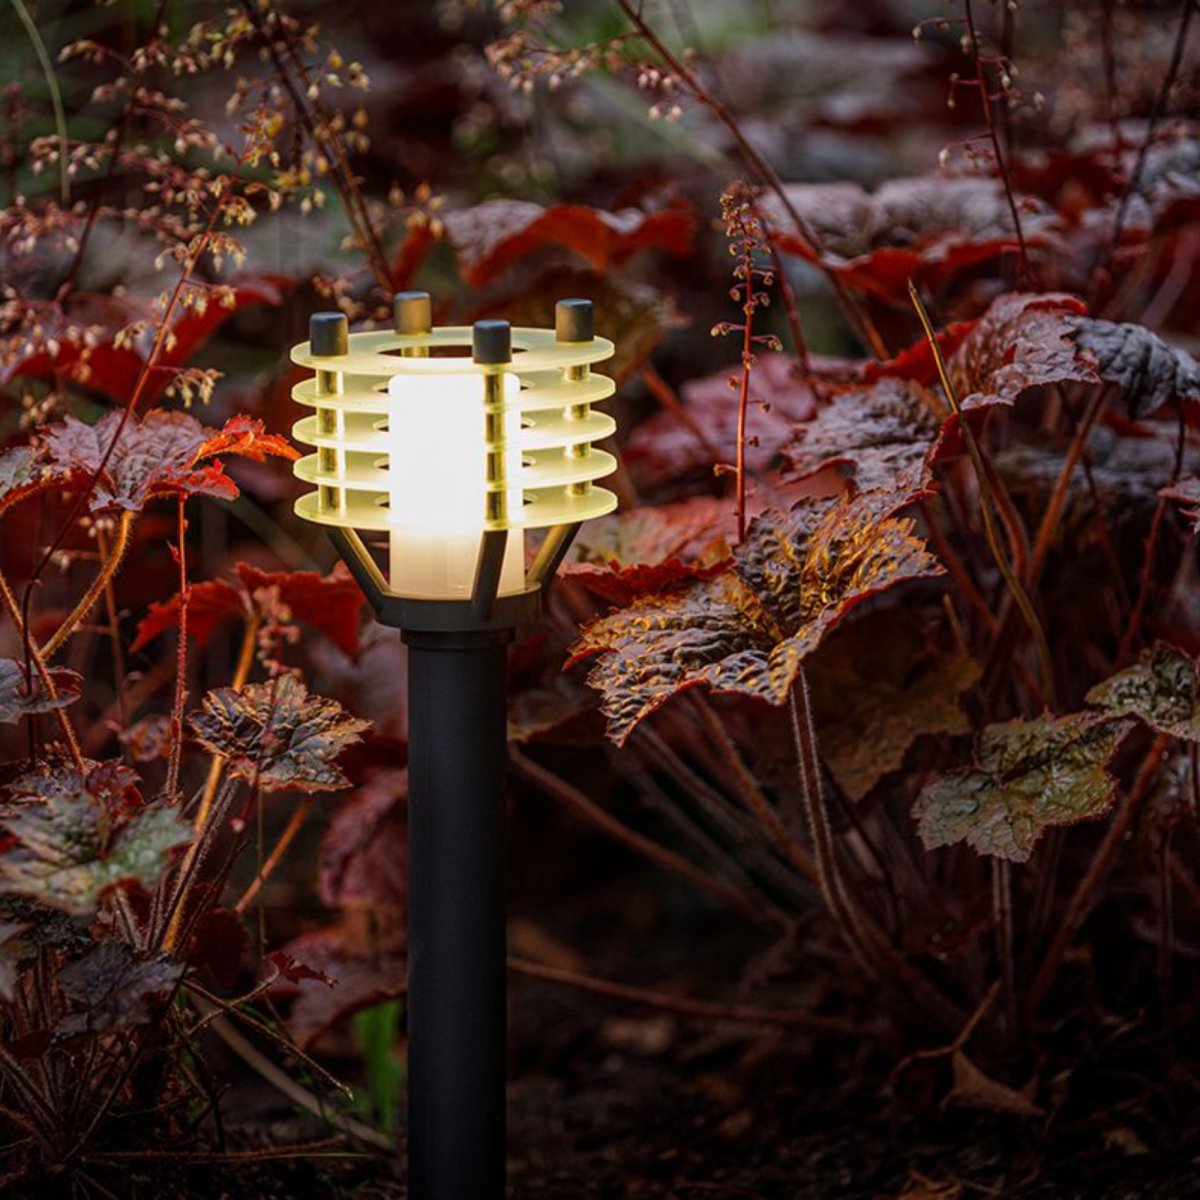 Lampe de jardin noire adaptée à l'éclairage extérieur basse tension 12 volts 